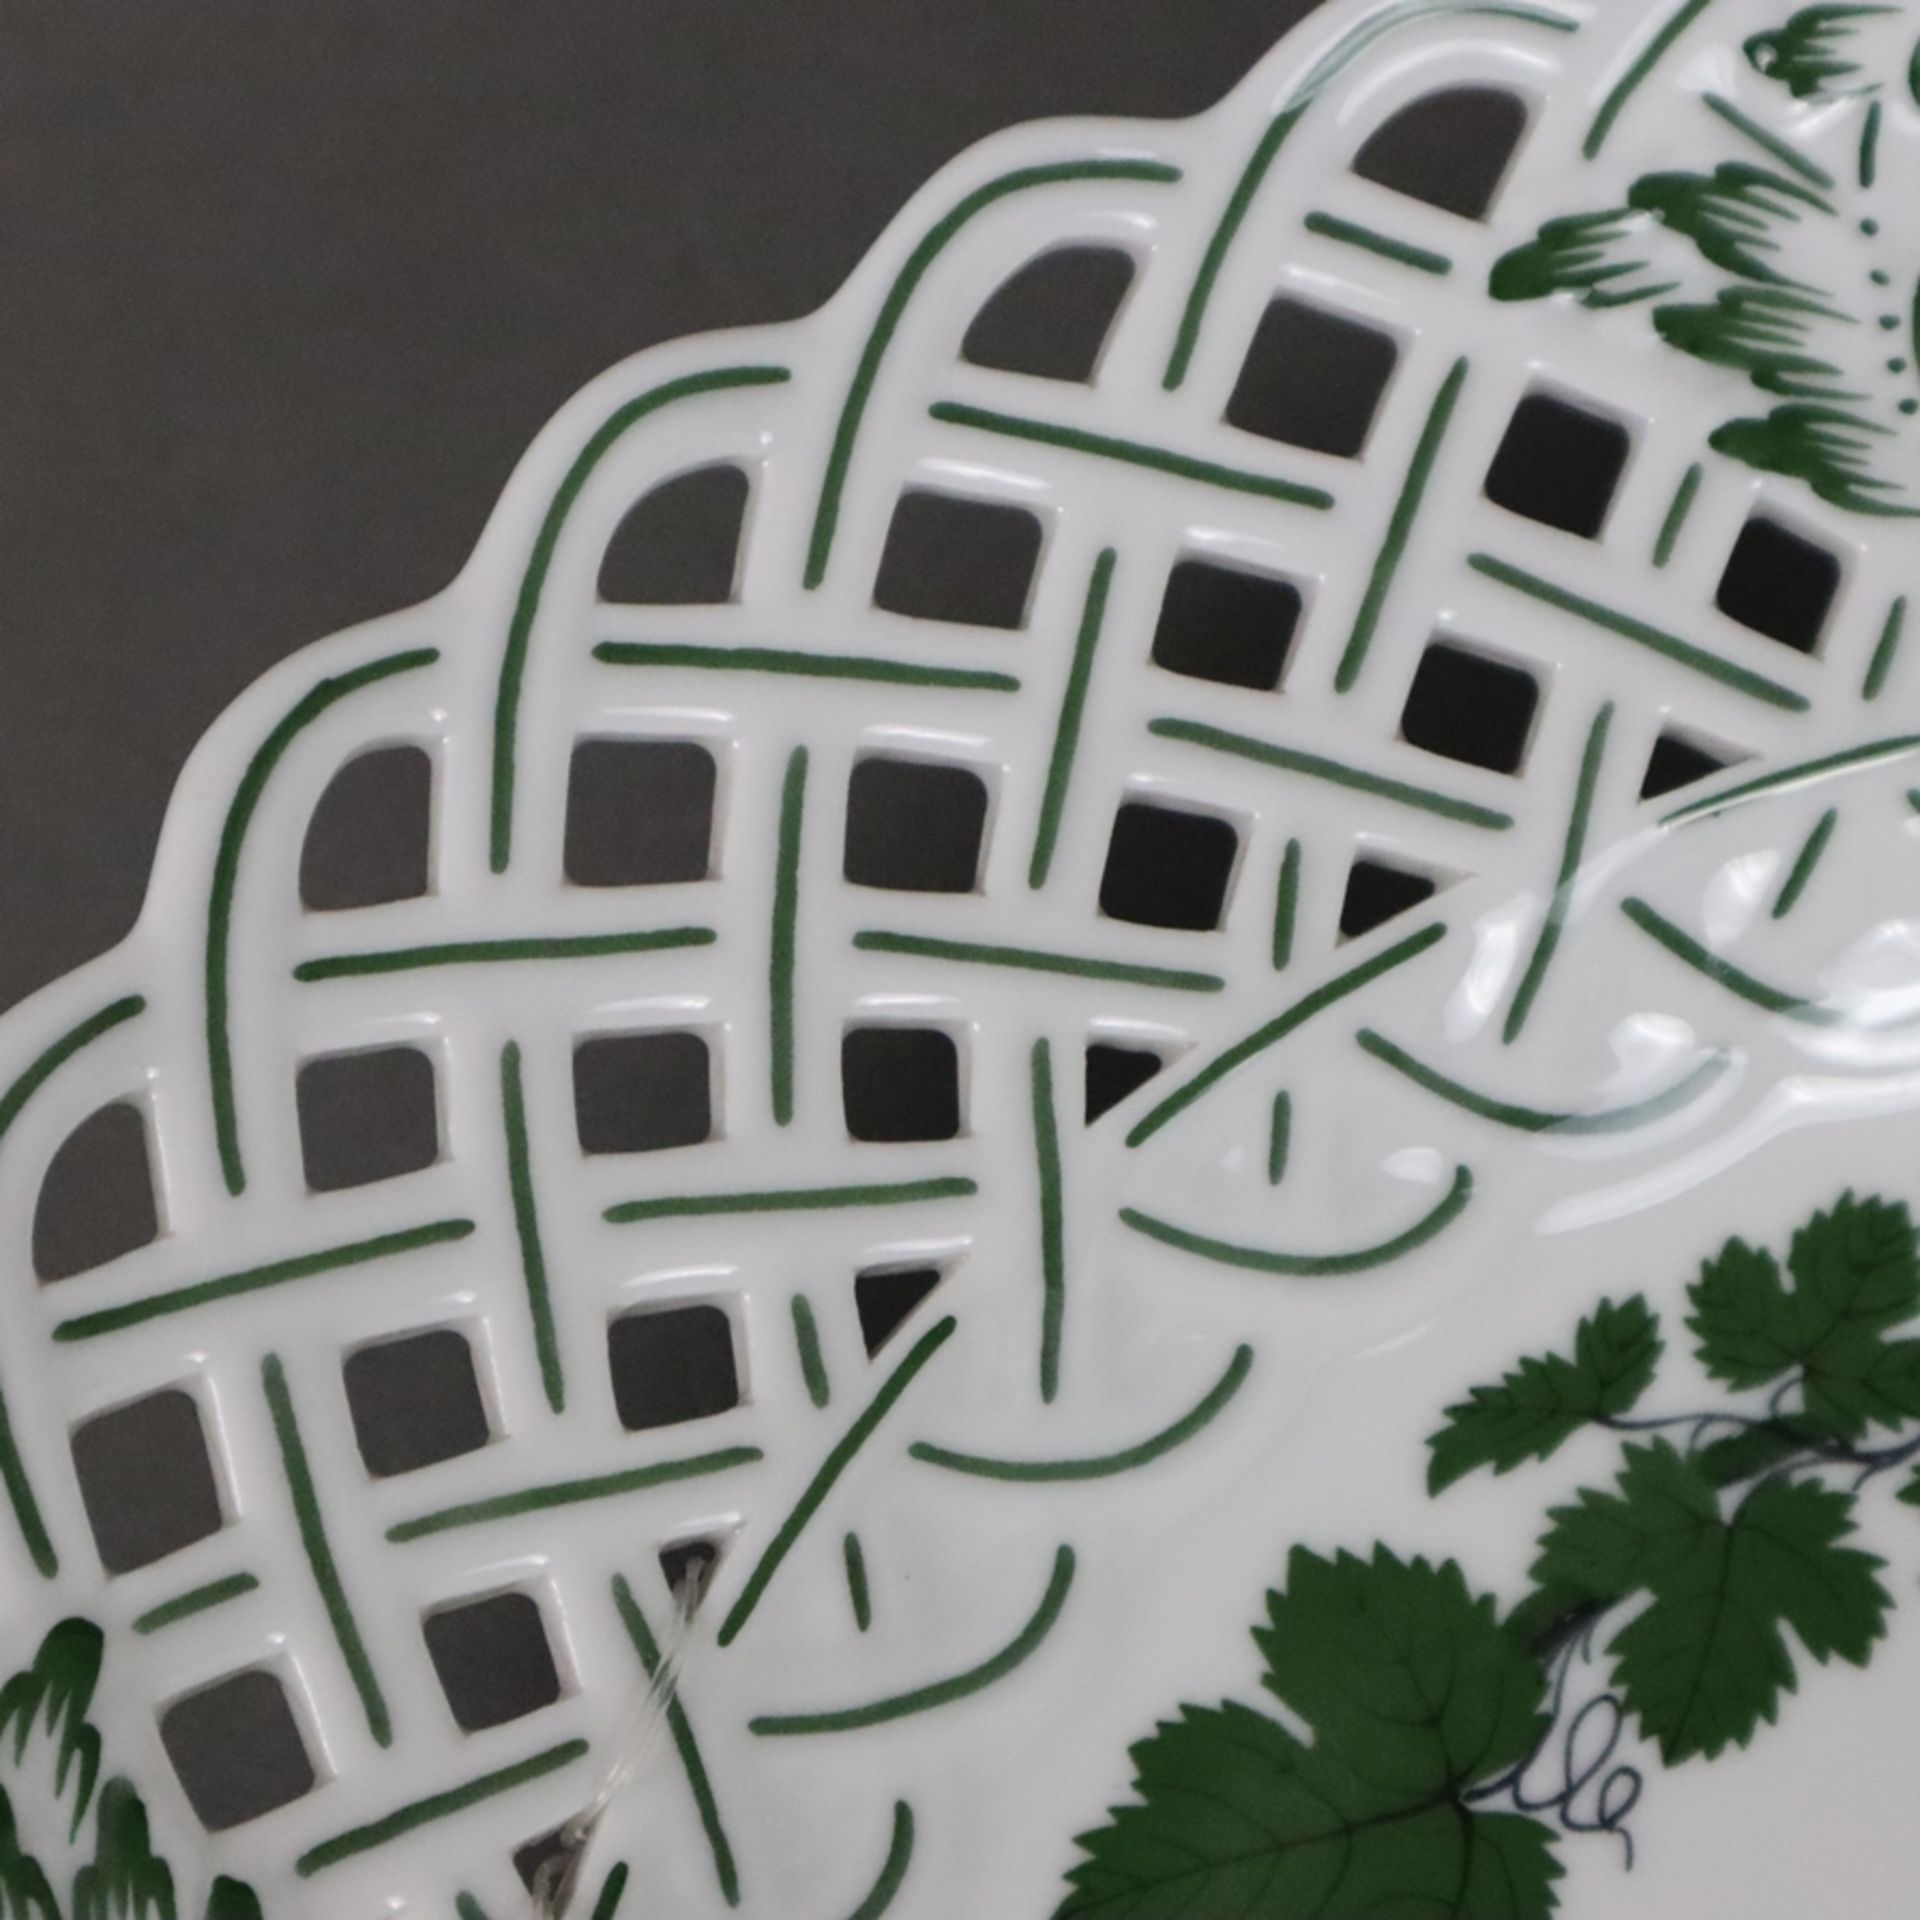 Zierteller - Meissen, Porzellan, Weinlaubdekor in Grün und Schwarz, runde Form mit durchbrochen gea - Bild 4 aus 5